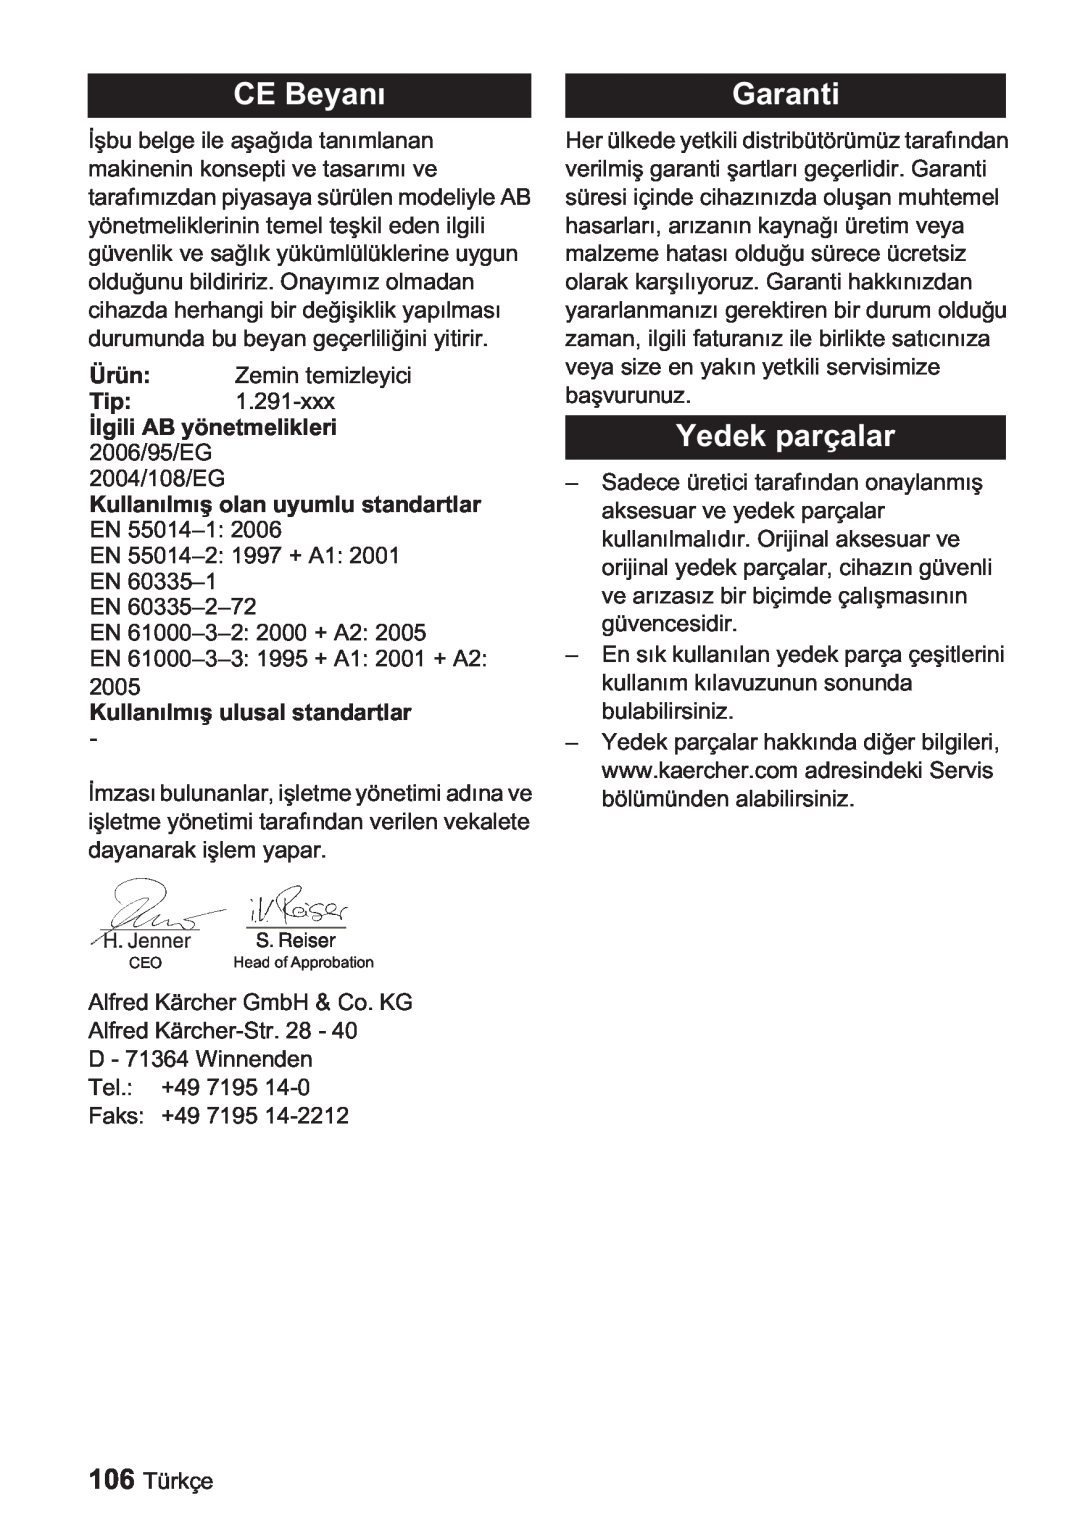 Karcher BDP 1500, BDP 50 manual CE Beyan, Yedek parçalar, Kullanuyumlu standartlar, Kullanstandartlar, Garanti 